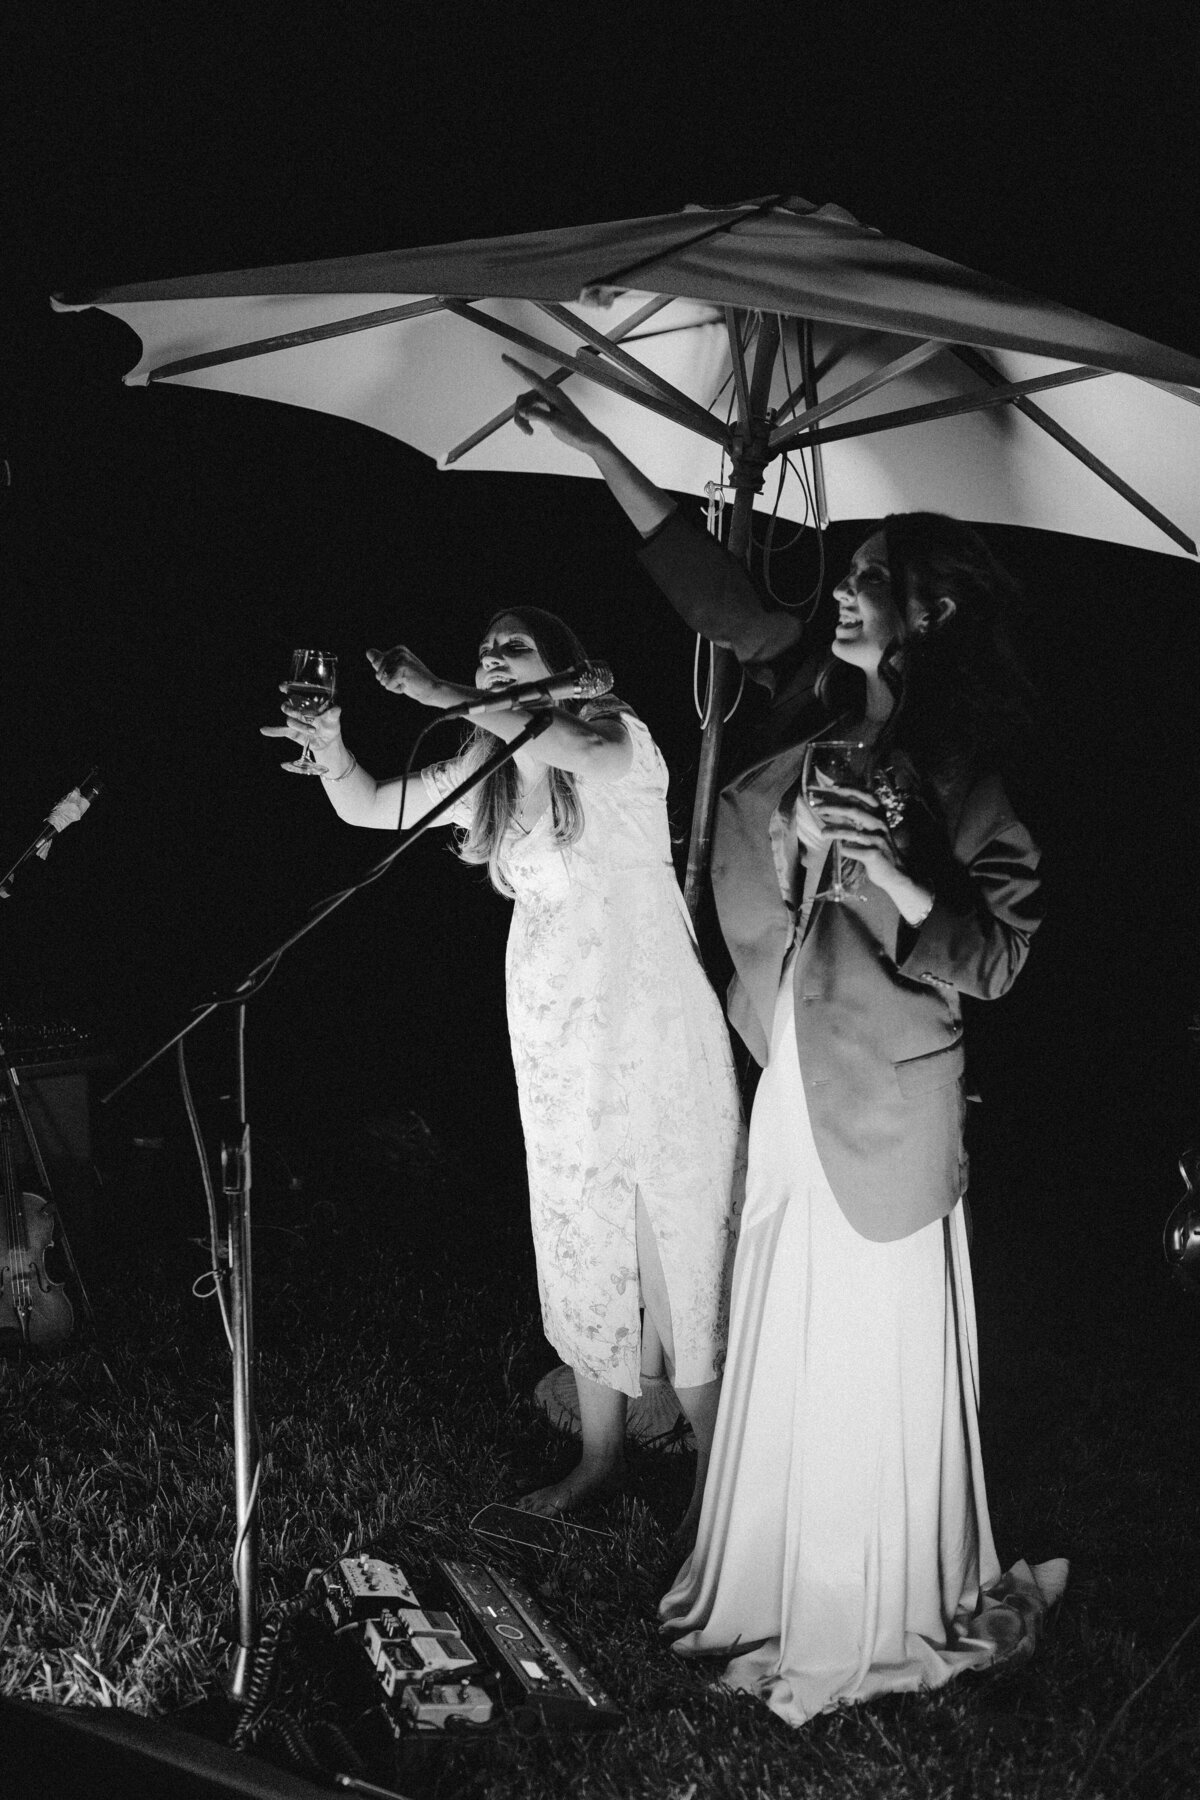 Wedding guests singing at Dallenbach Ranch Wedding in Colorado